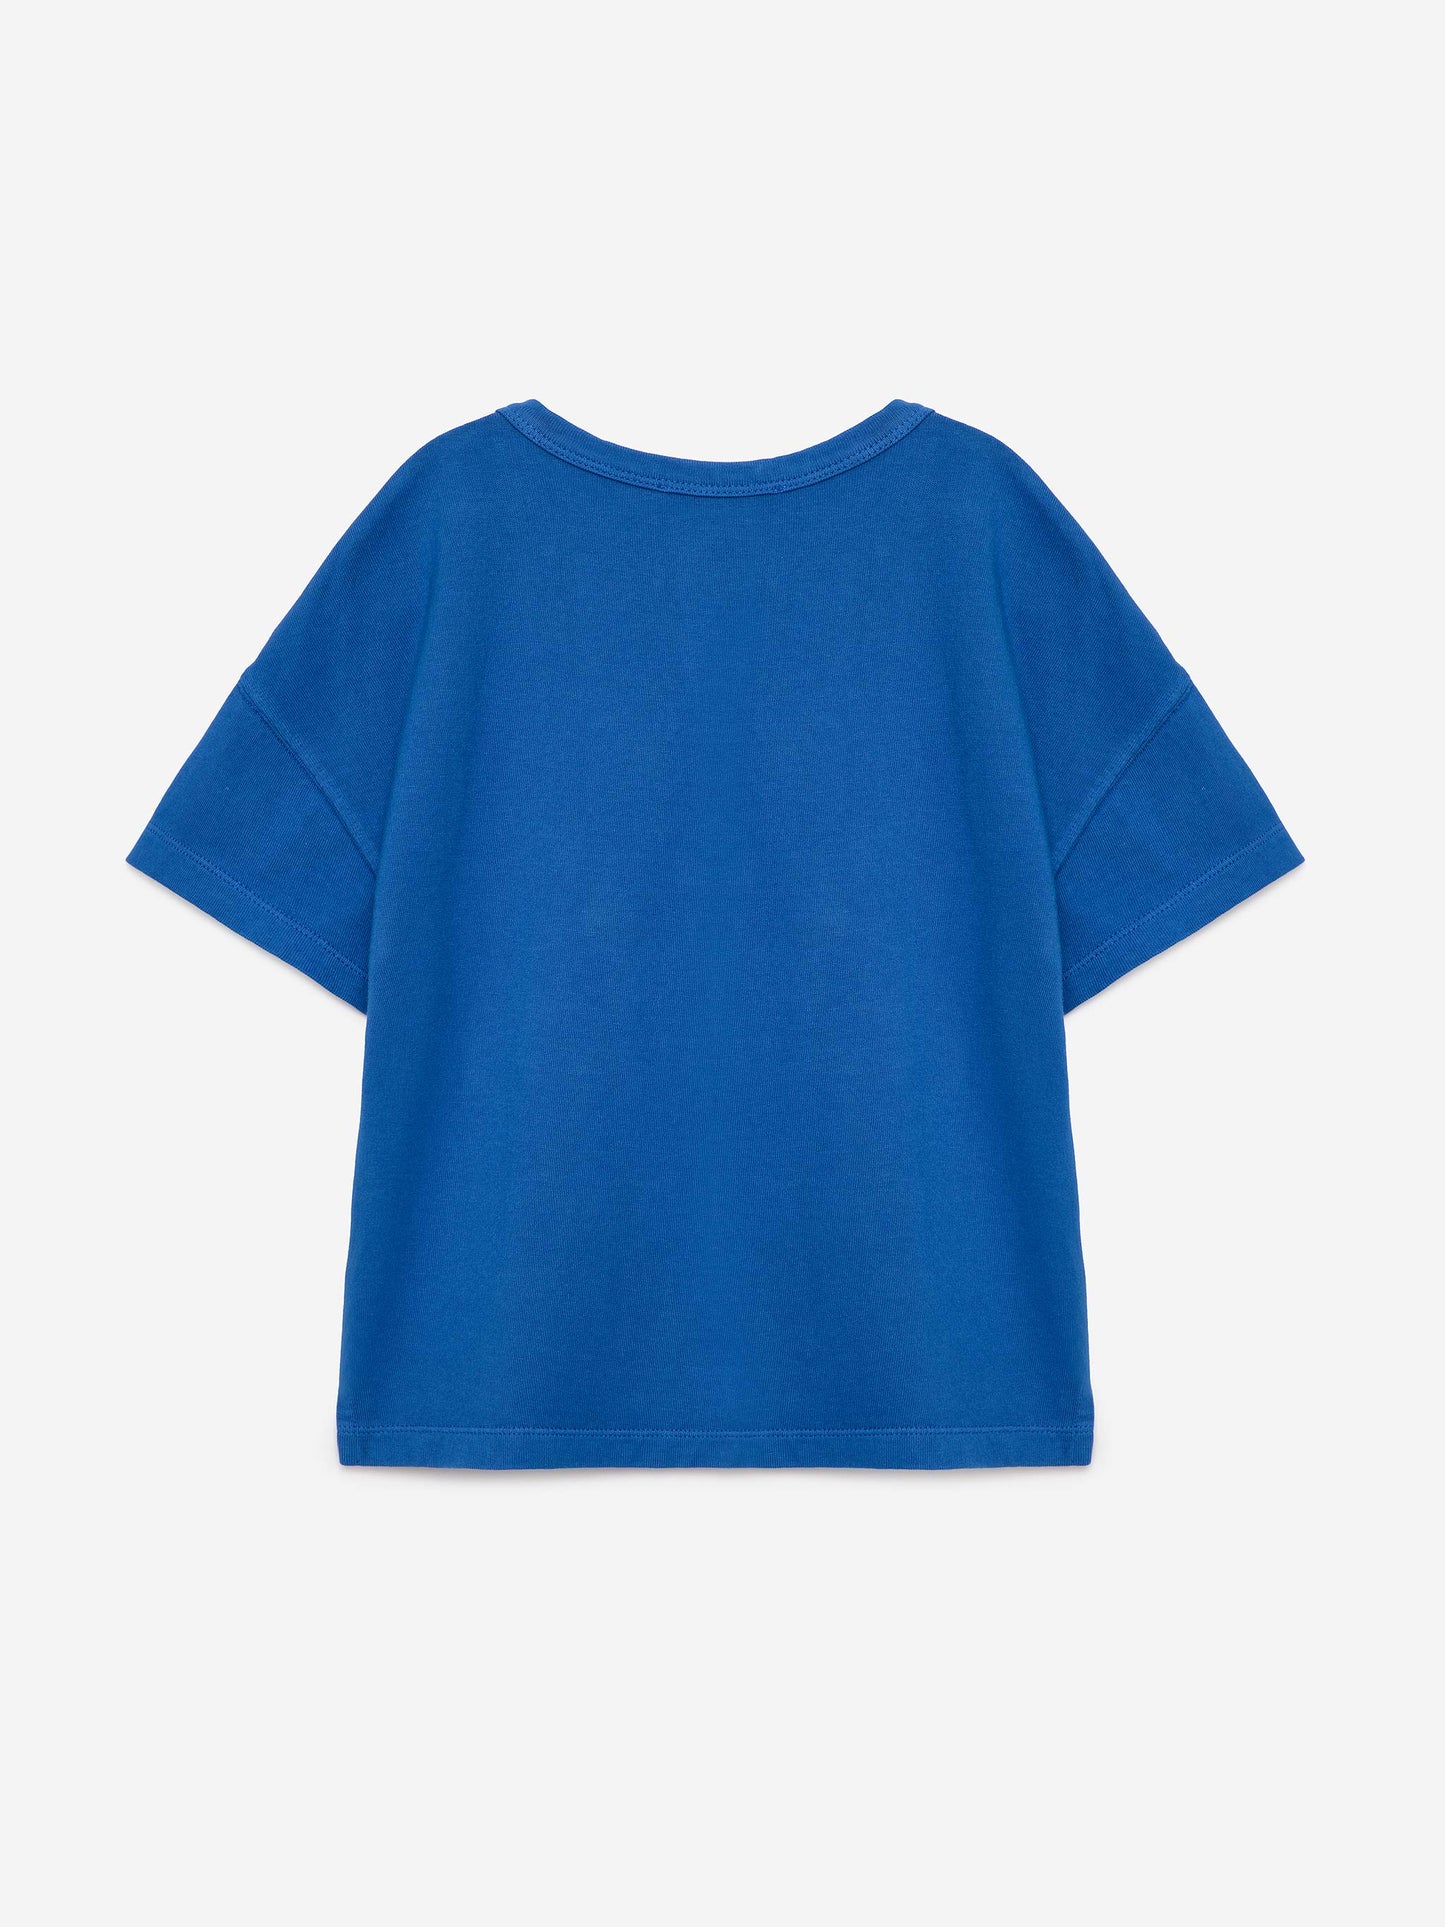 T-shirt nº01 Sapphire Blue